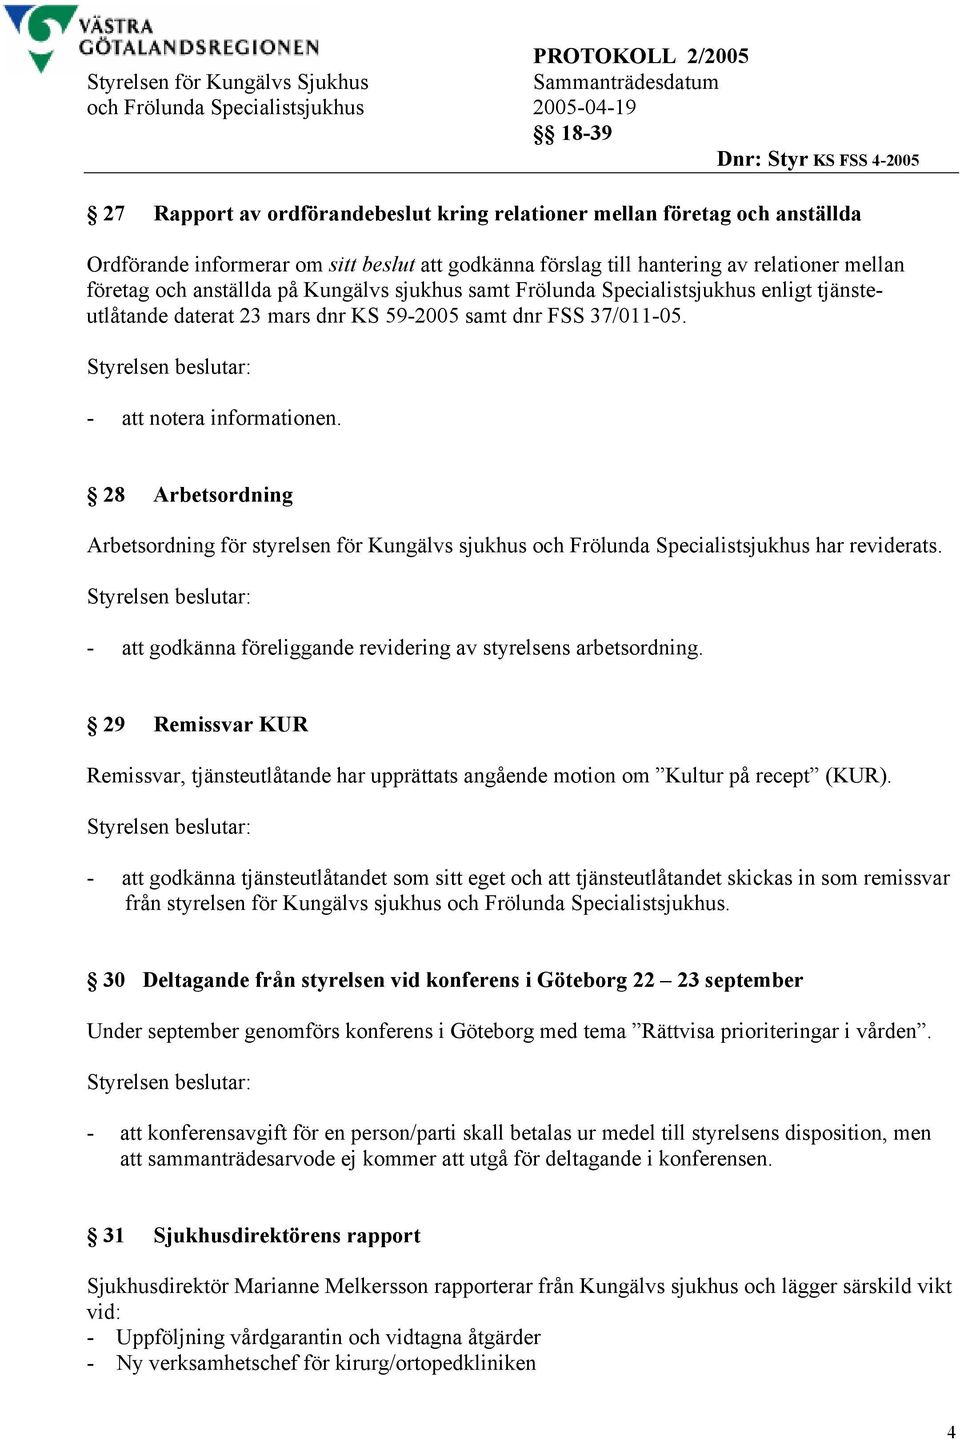 28 Arbetsordning Arbetsordning för styrelsen för Kungälvs sjukhus och Frölunda Specialistsjukhus har reviderats. - att godkänna föreliggande revidering av styrelsens arbetsordning.